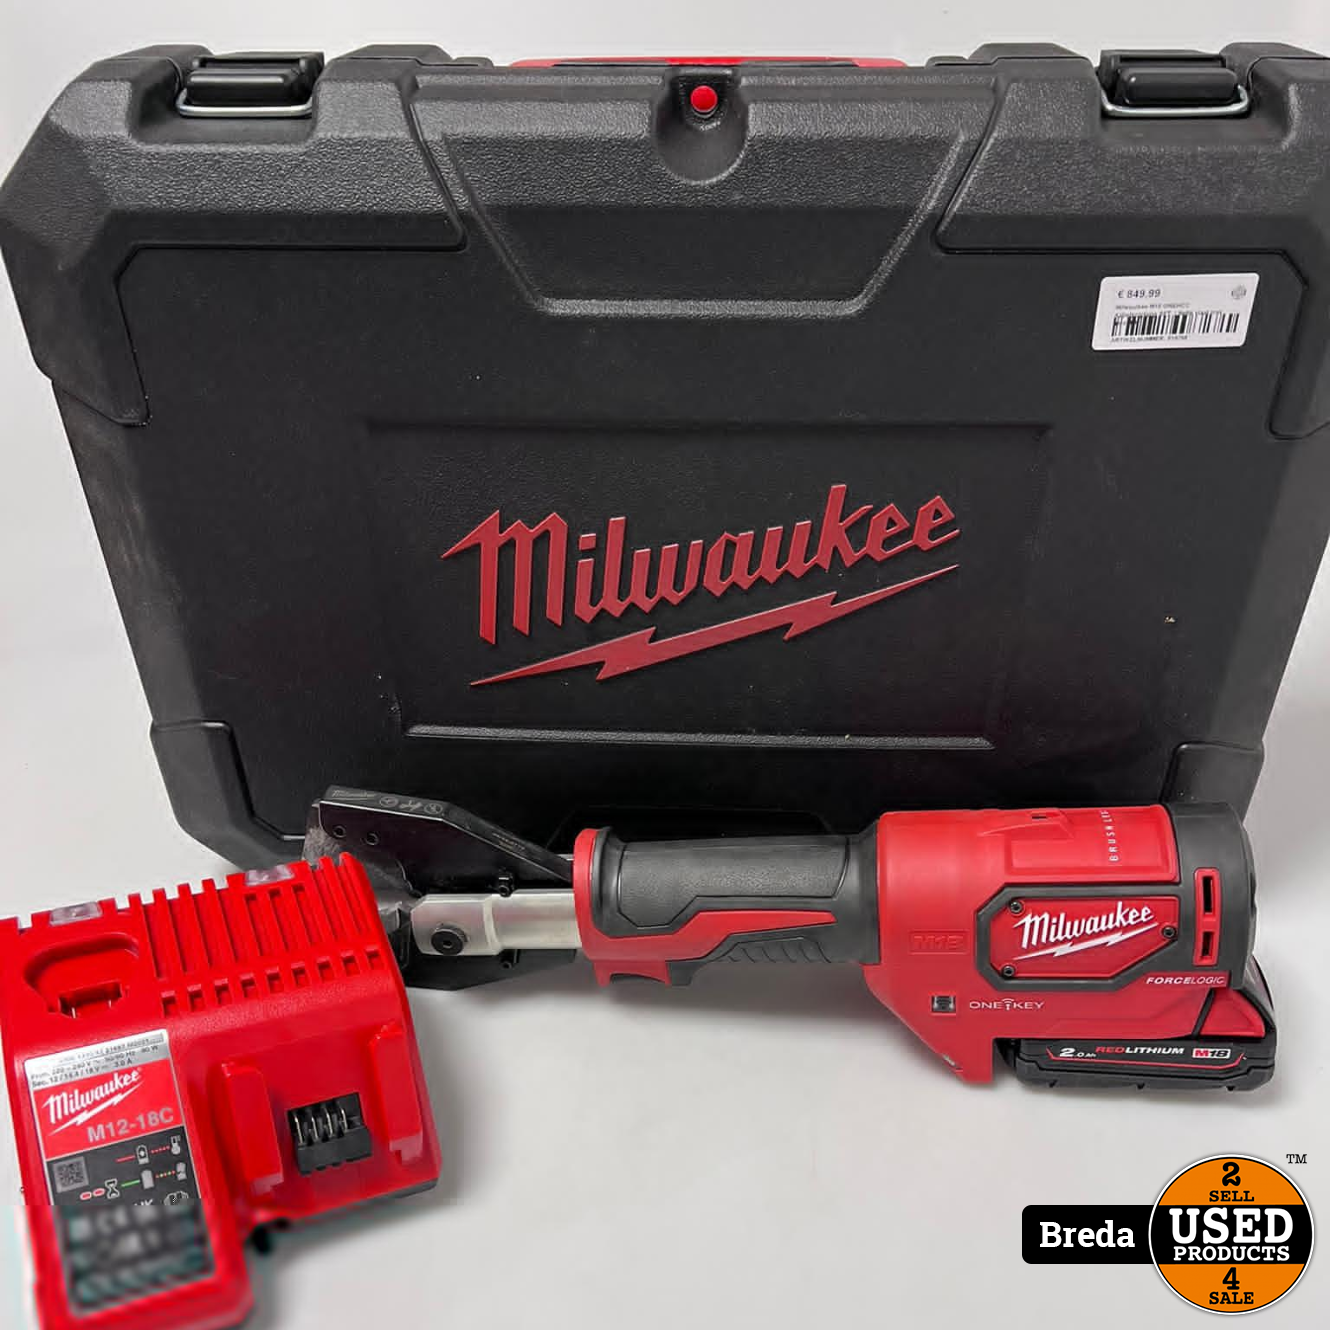 Behoefte aan Overtekenen Doe het niet Milwaukee M18 ONEHCC hydraulische kabelkniptang set | In kist | Met lader en  accu | Met garantie - Used Products Breda